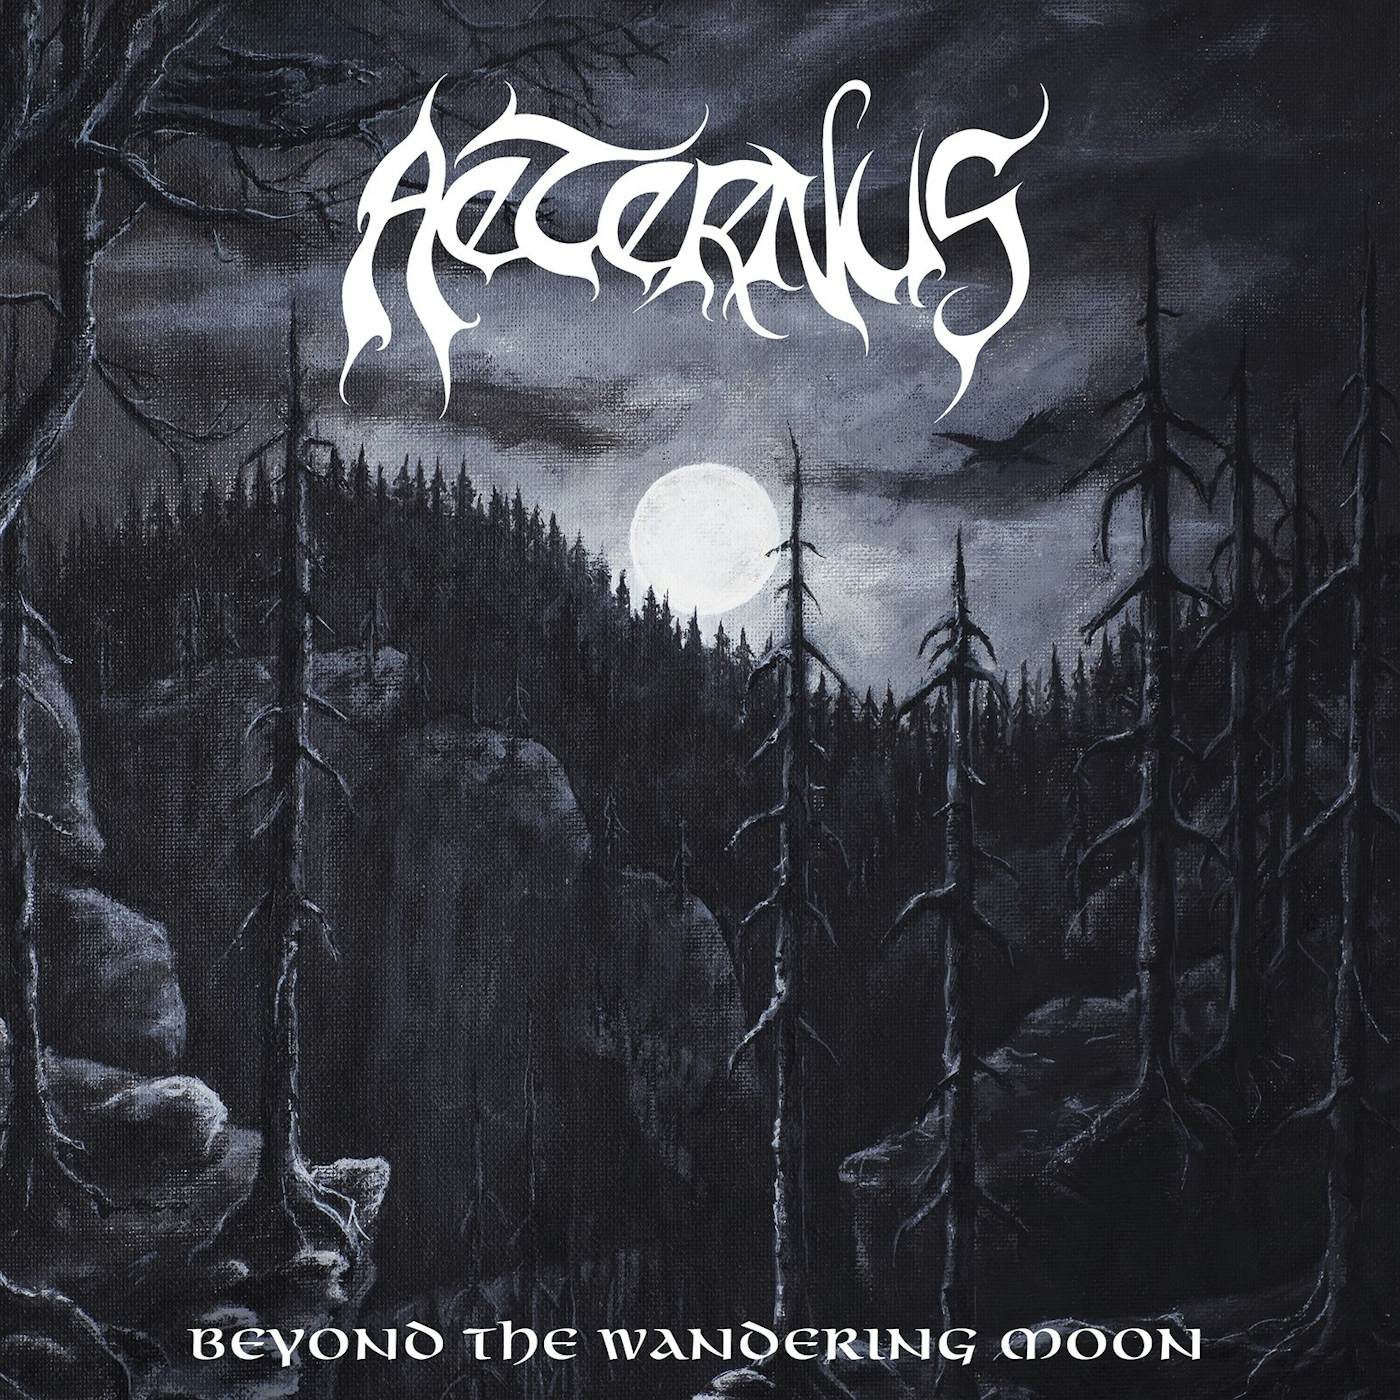 Aeternus "Beyond the wandering moon" CD